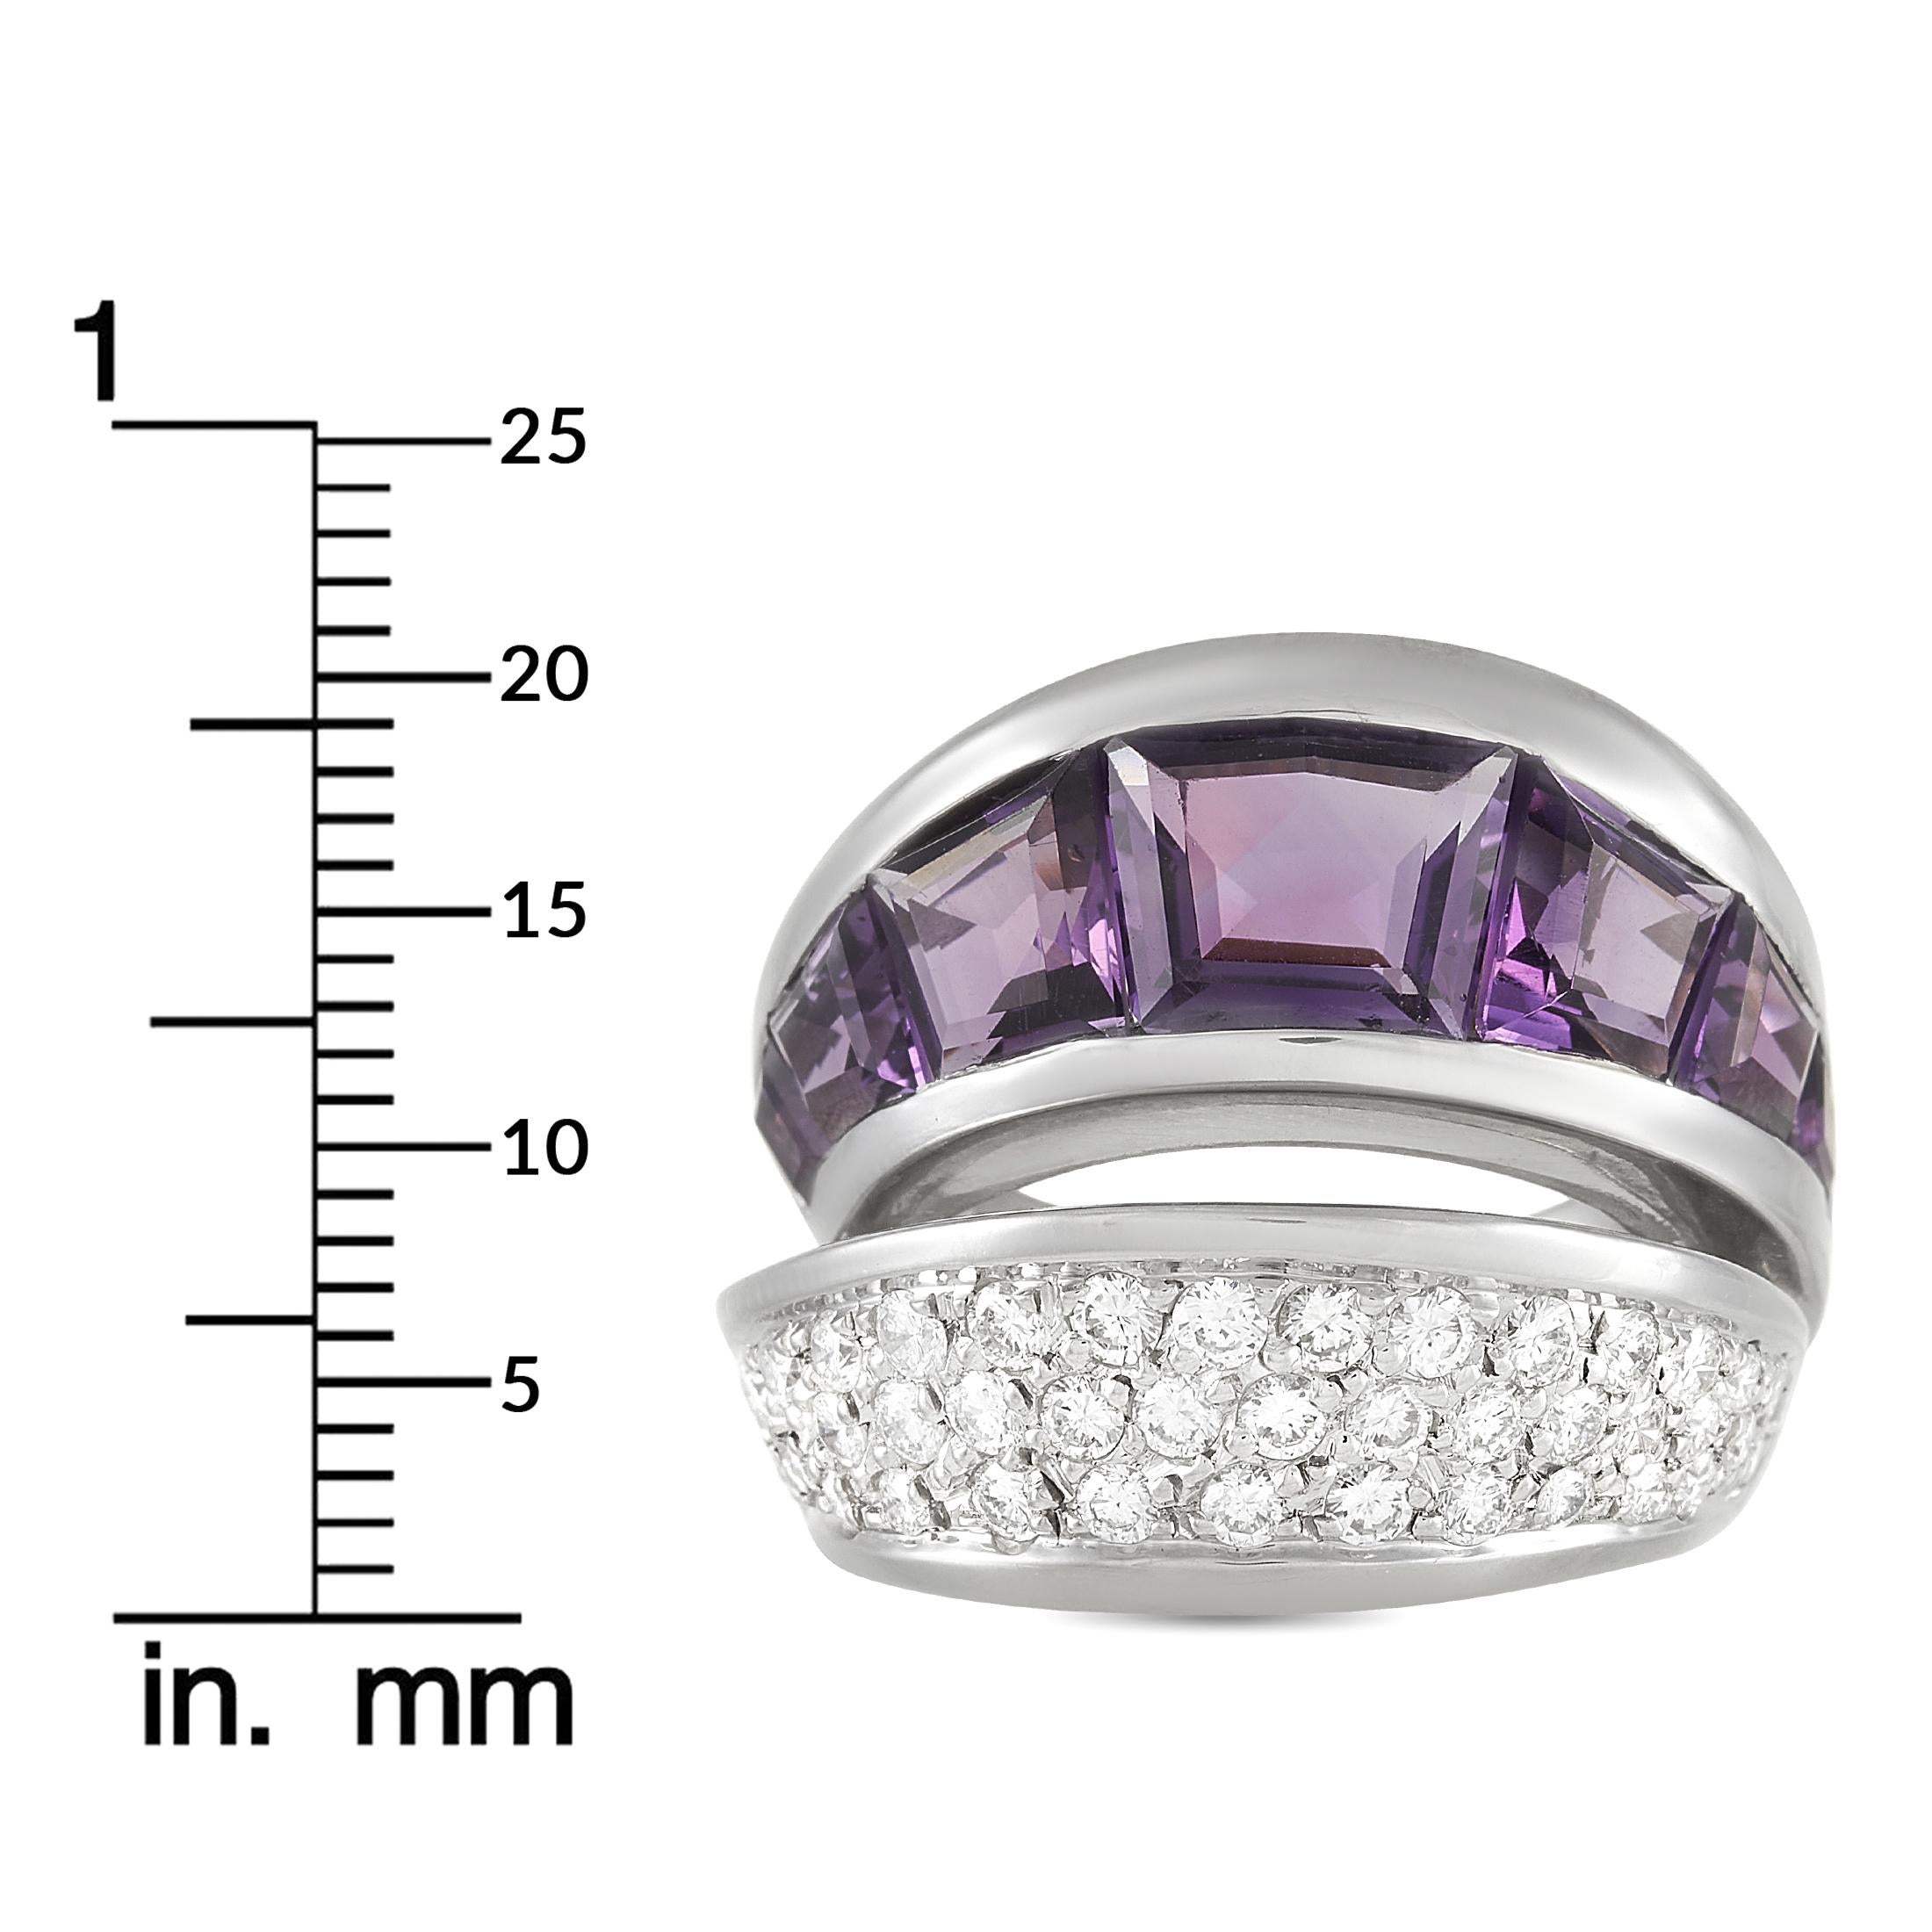 Vasari 18k White Gold 1.25 Ct Diamond and 6.50 Ct Amethyst Ring 1